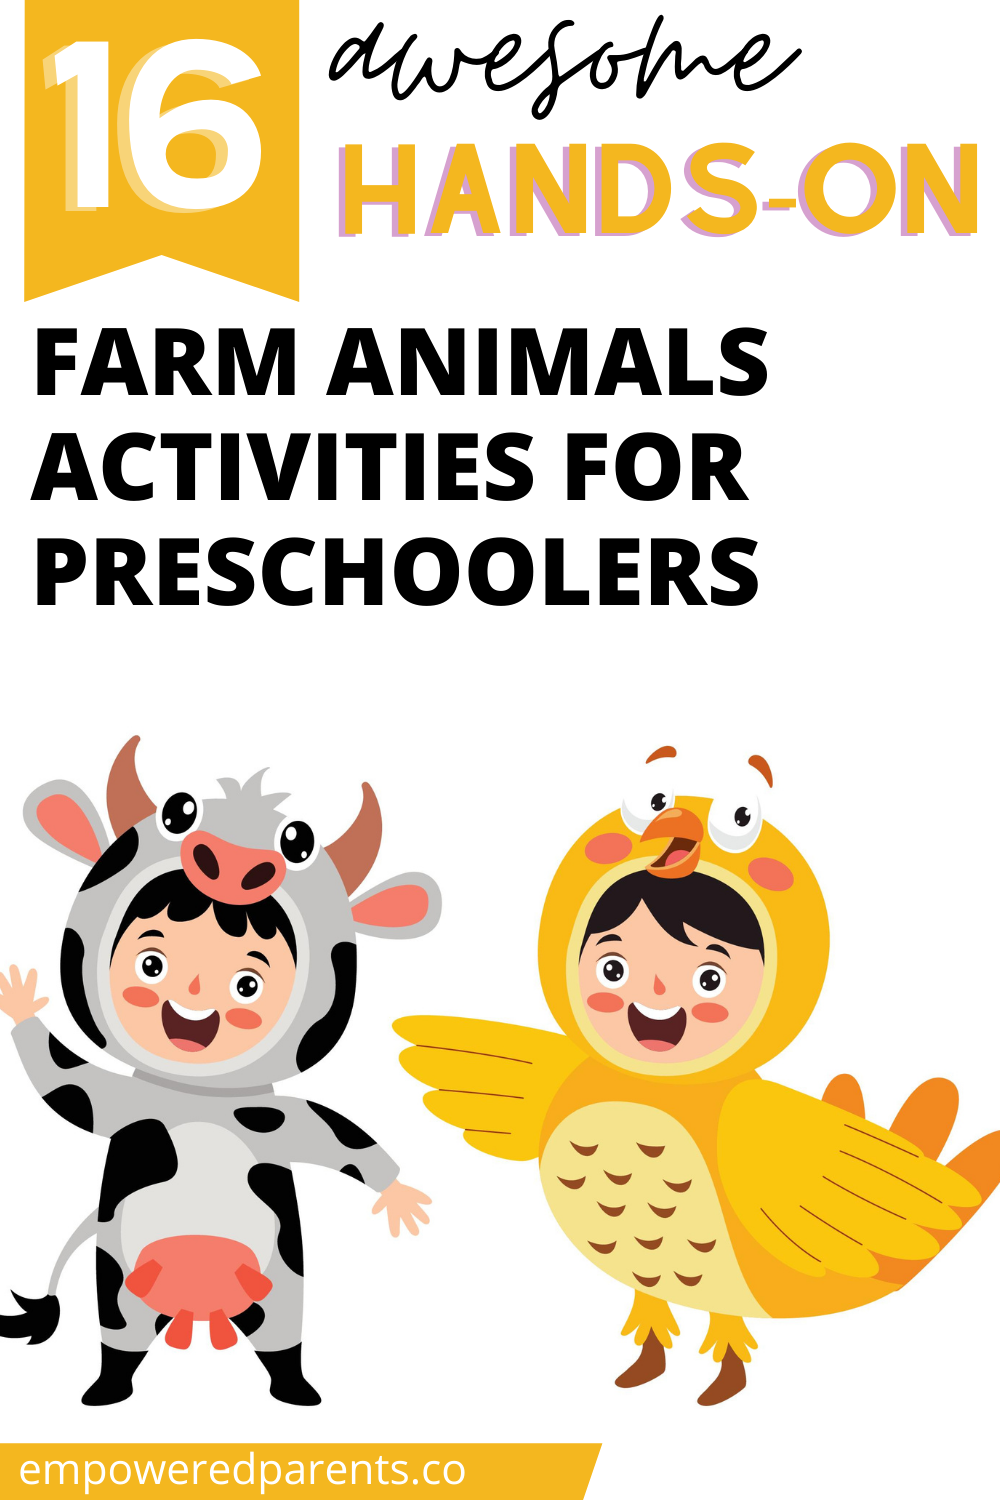 16 Hands-On Farm Animals Activities for Preschoolers - Empowered Parents